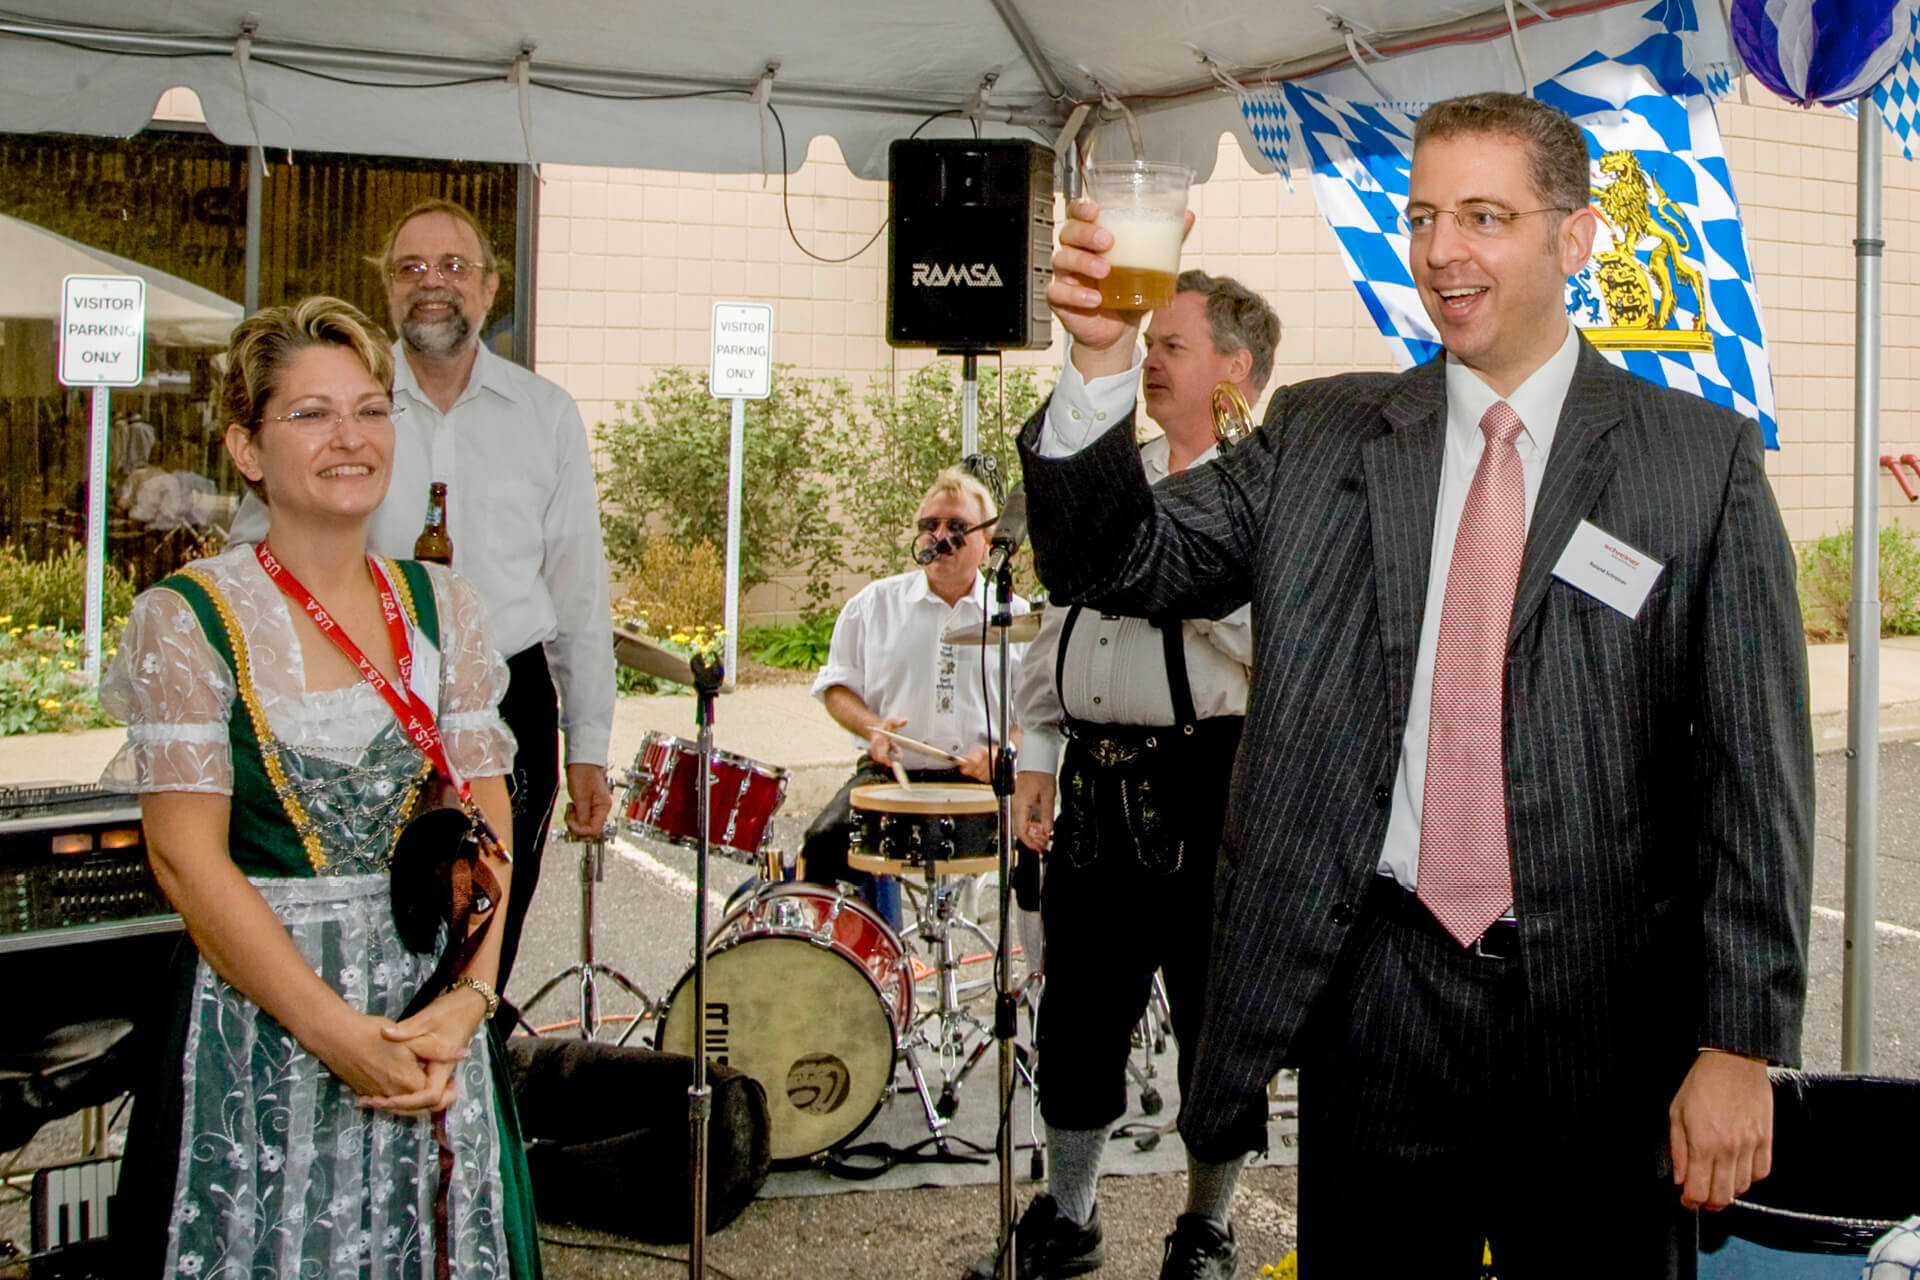 2008: Roland Schreiner opened the US location—still as President of Schreiner MediPharm back then.